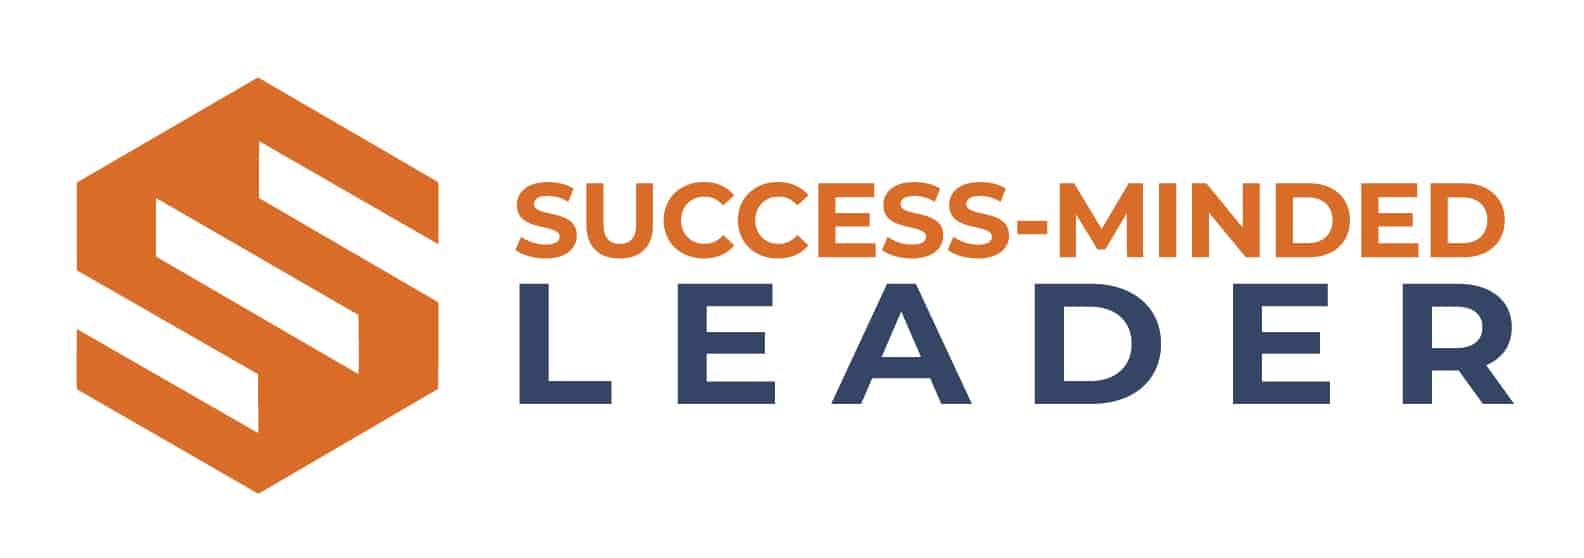 Success-Minded Leader